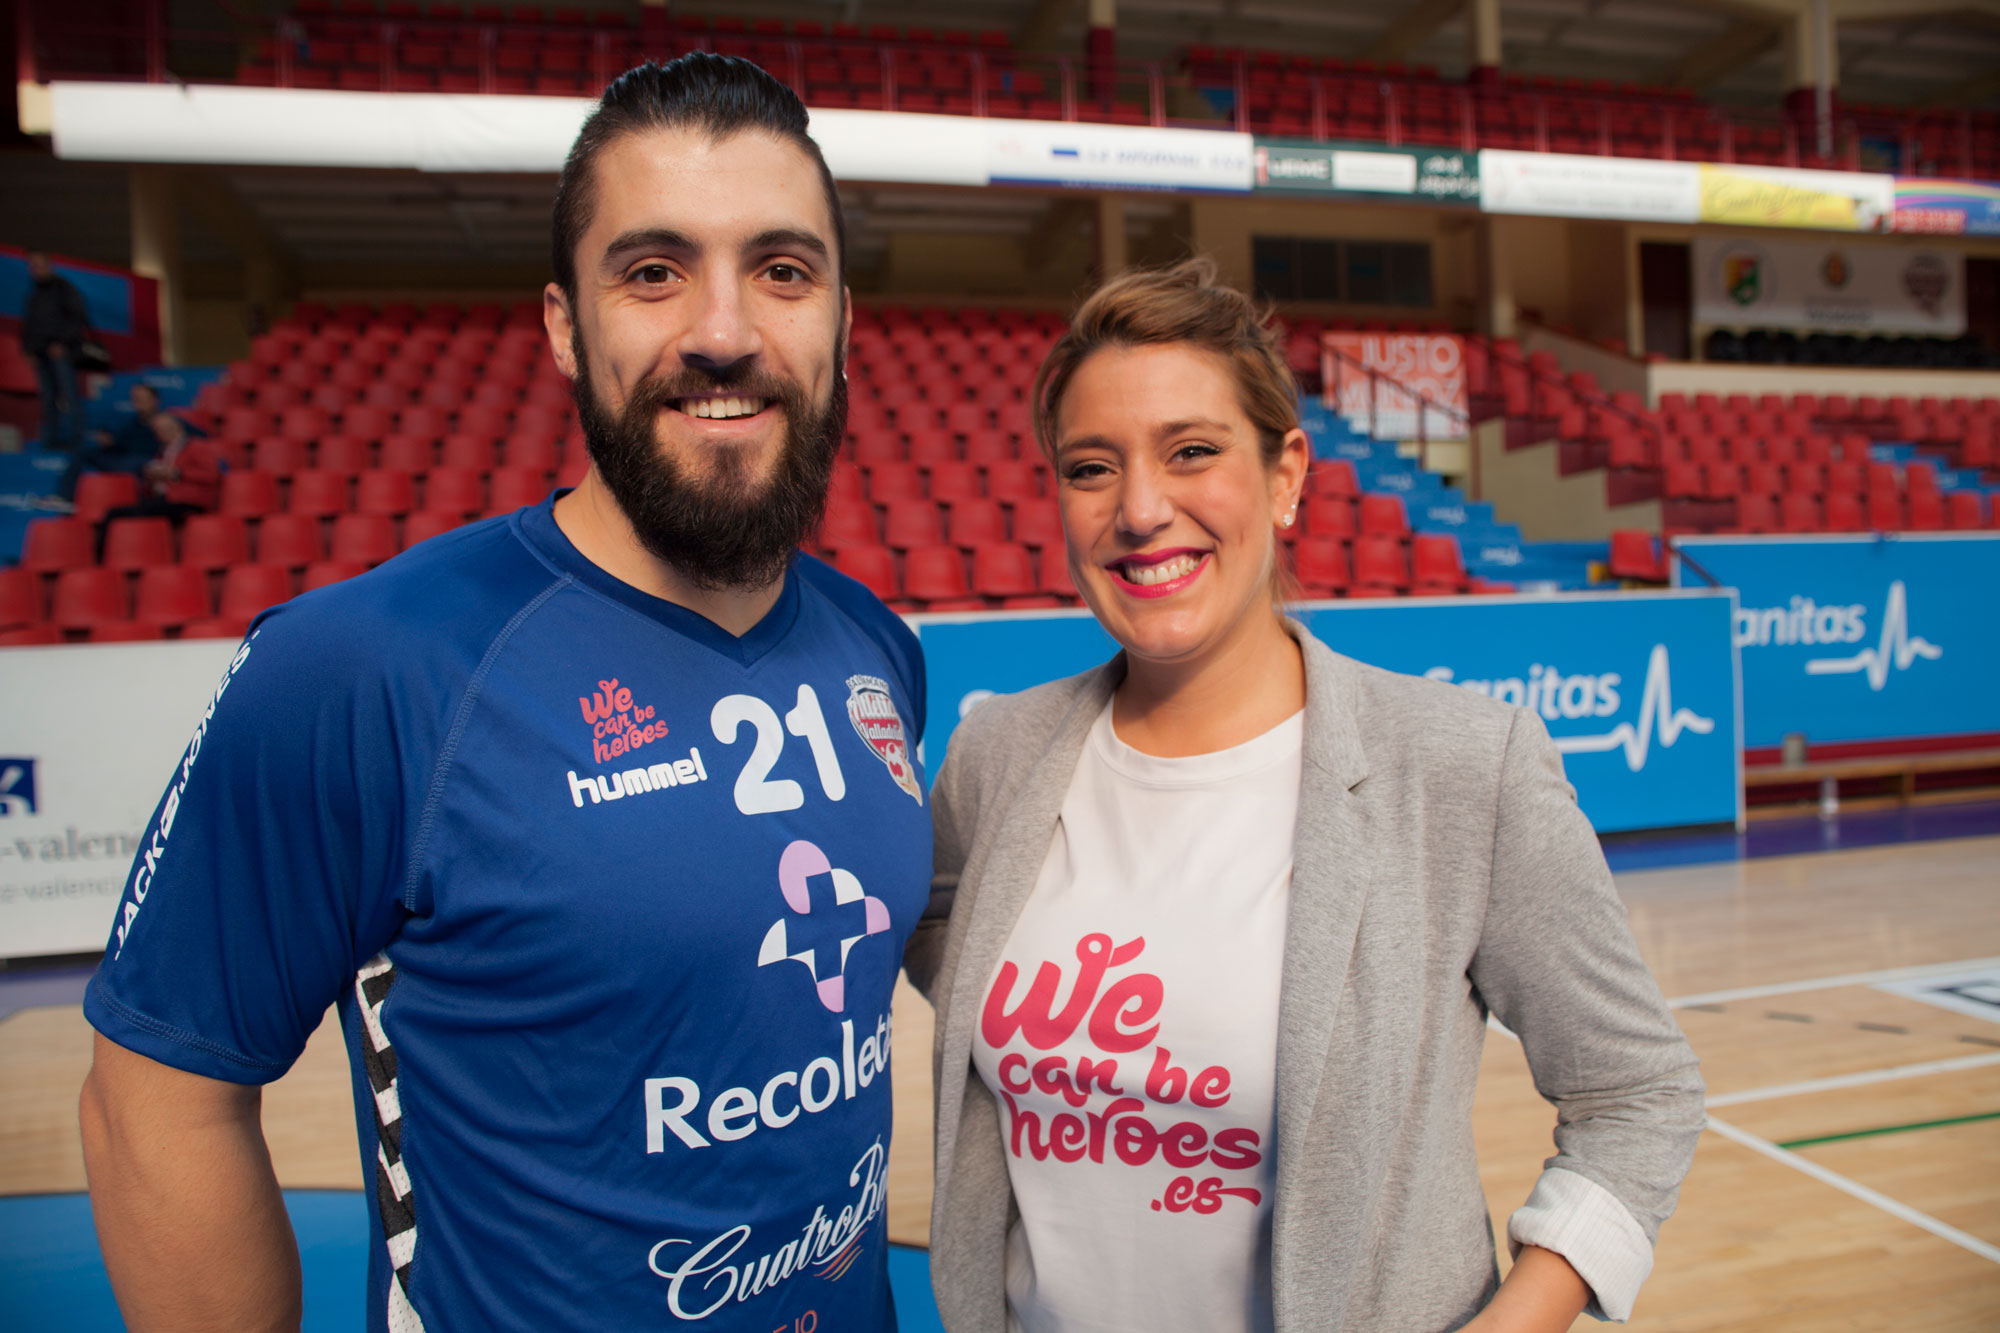 El Atlético Valladolid Recoletas colaborará con la asociación We can be heroes en su lucha contra el cáncer | Galería 1 / 2